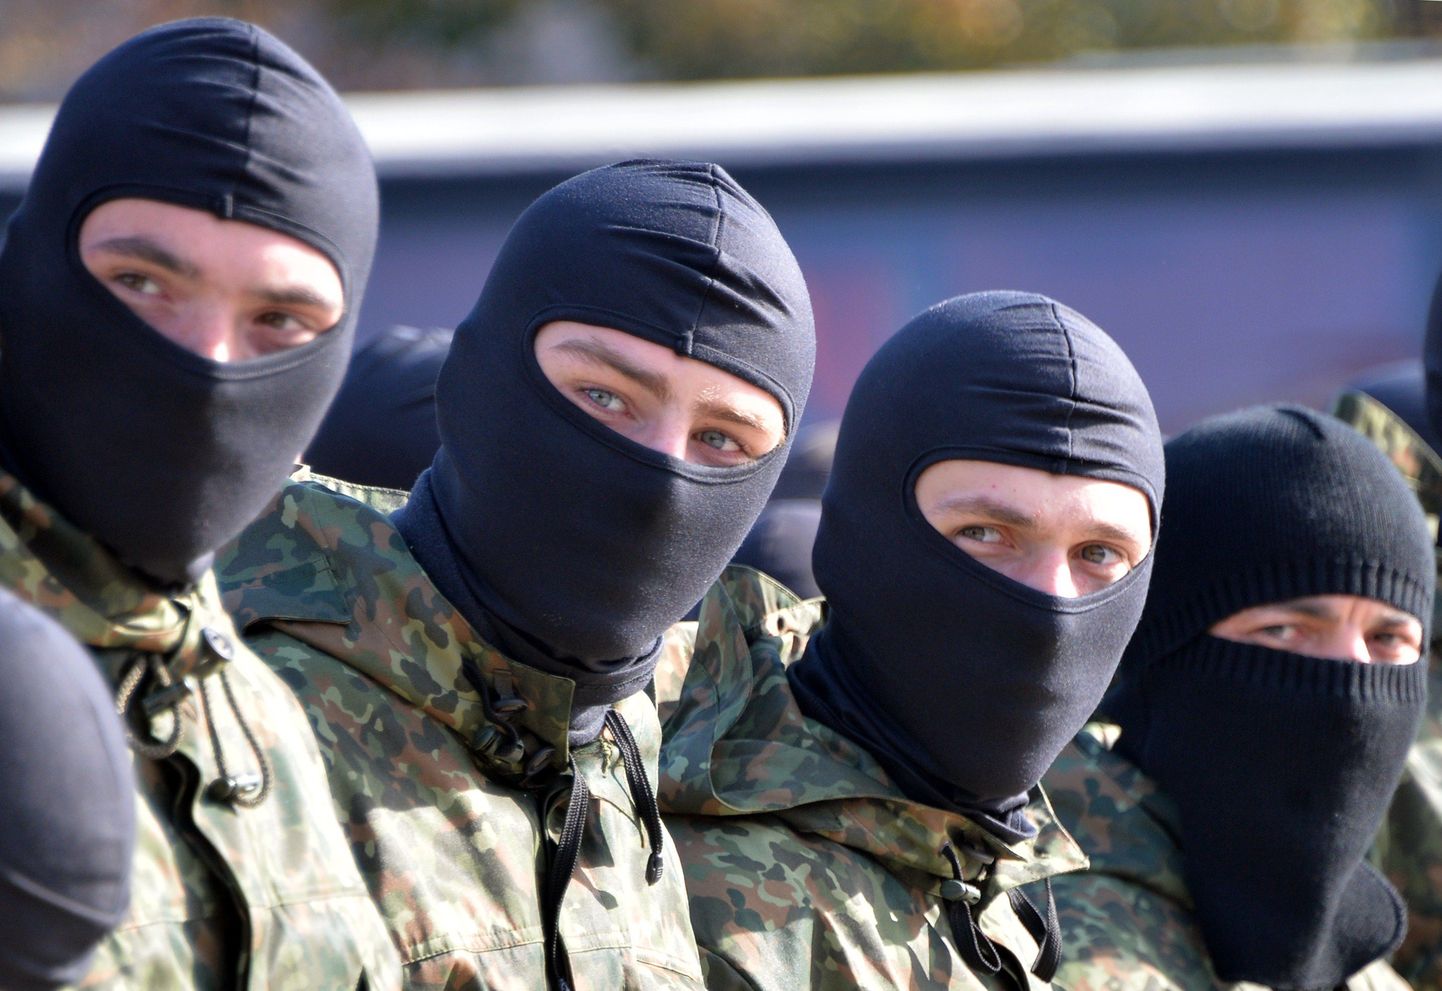 Служащие батальона "Азов".